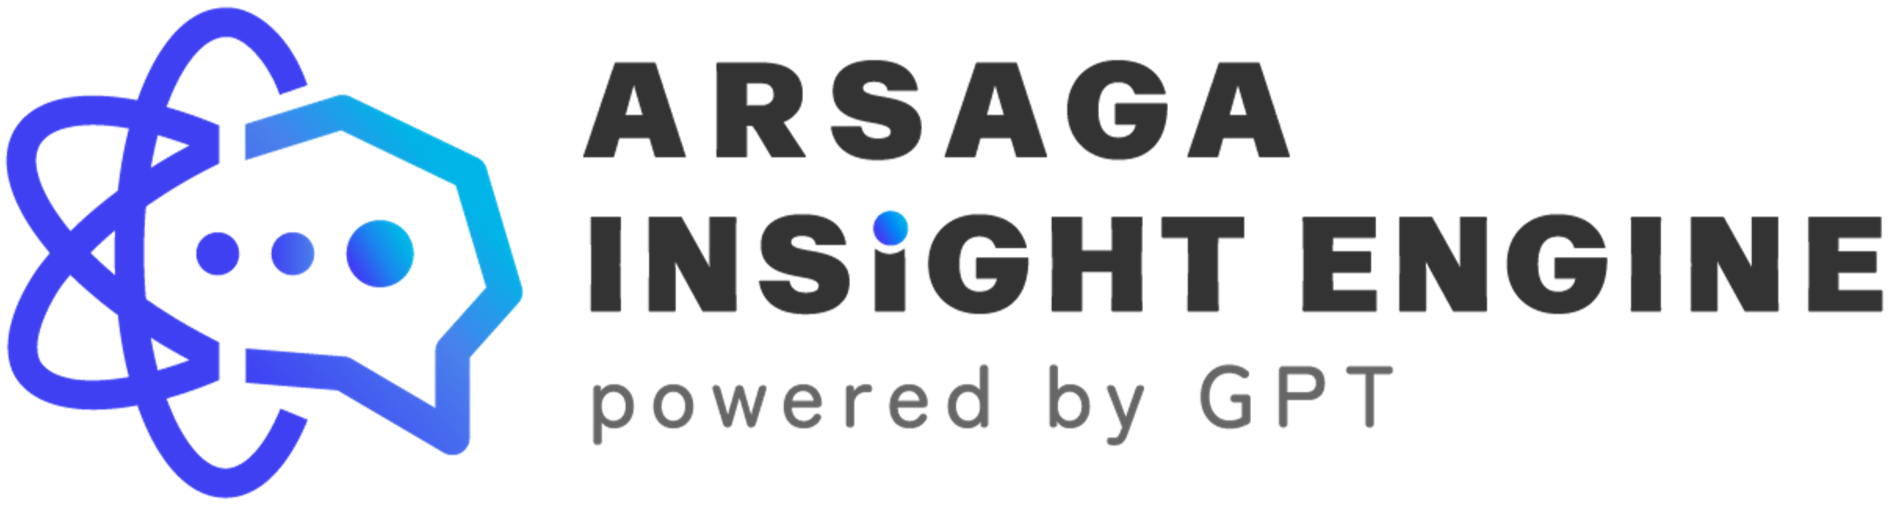 アルサーガパートナーズ、最先端の生成AI研究チーム「Arsaga GenerativeAI Lab」を本格発足